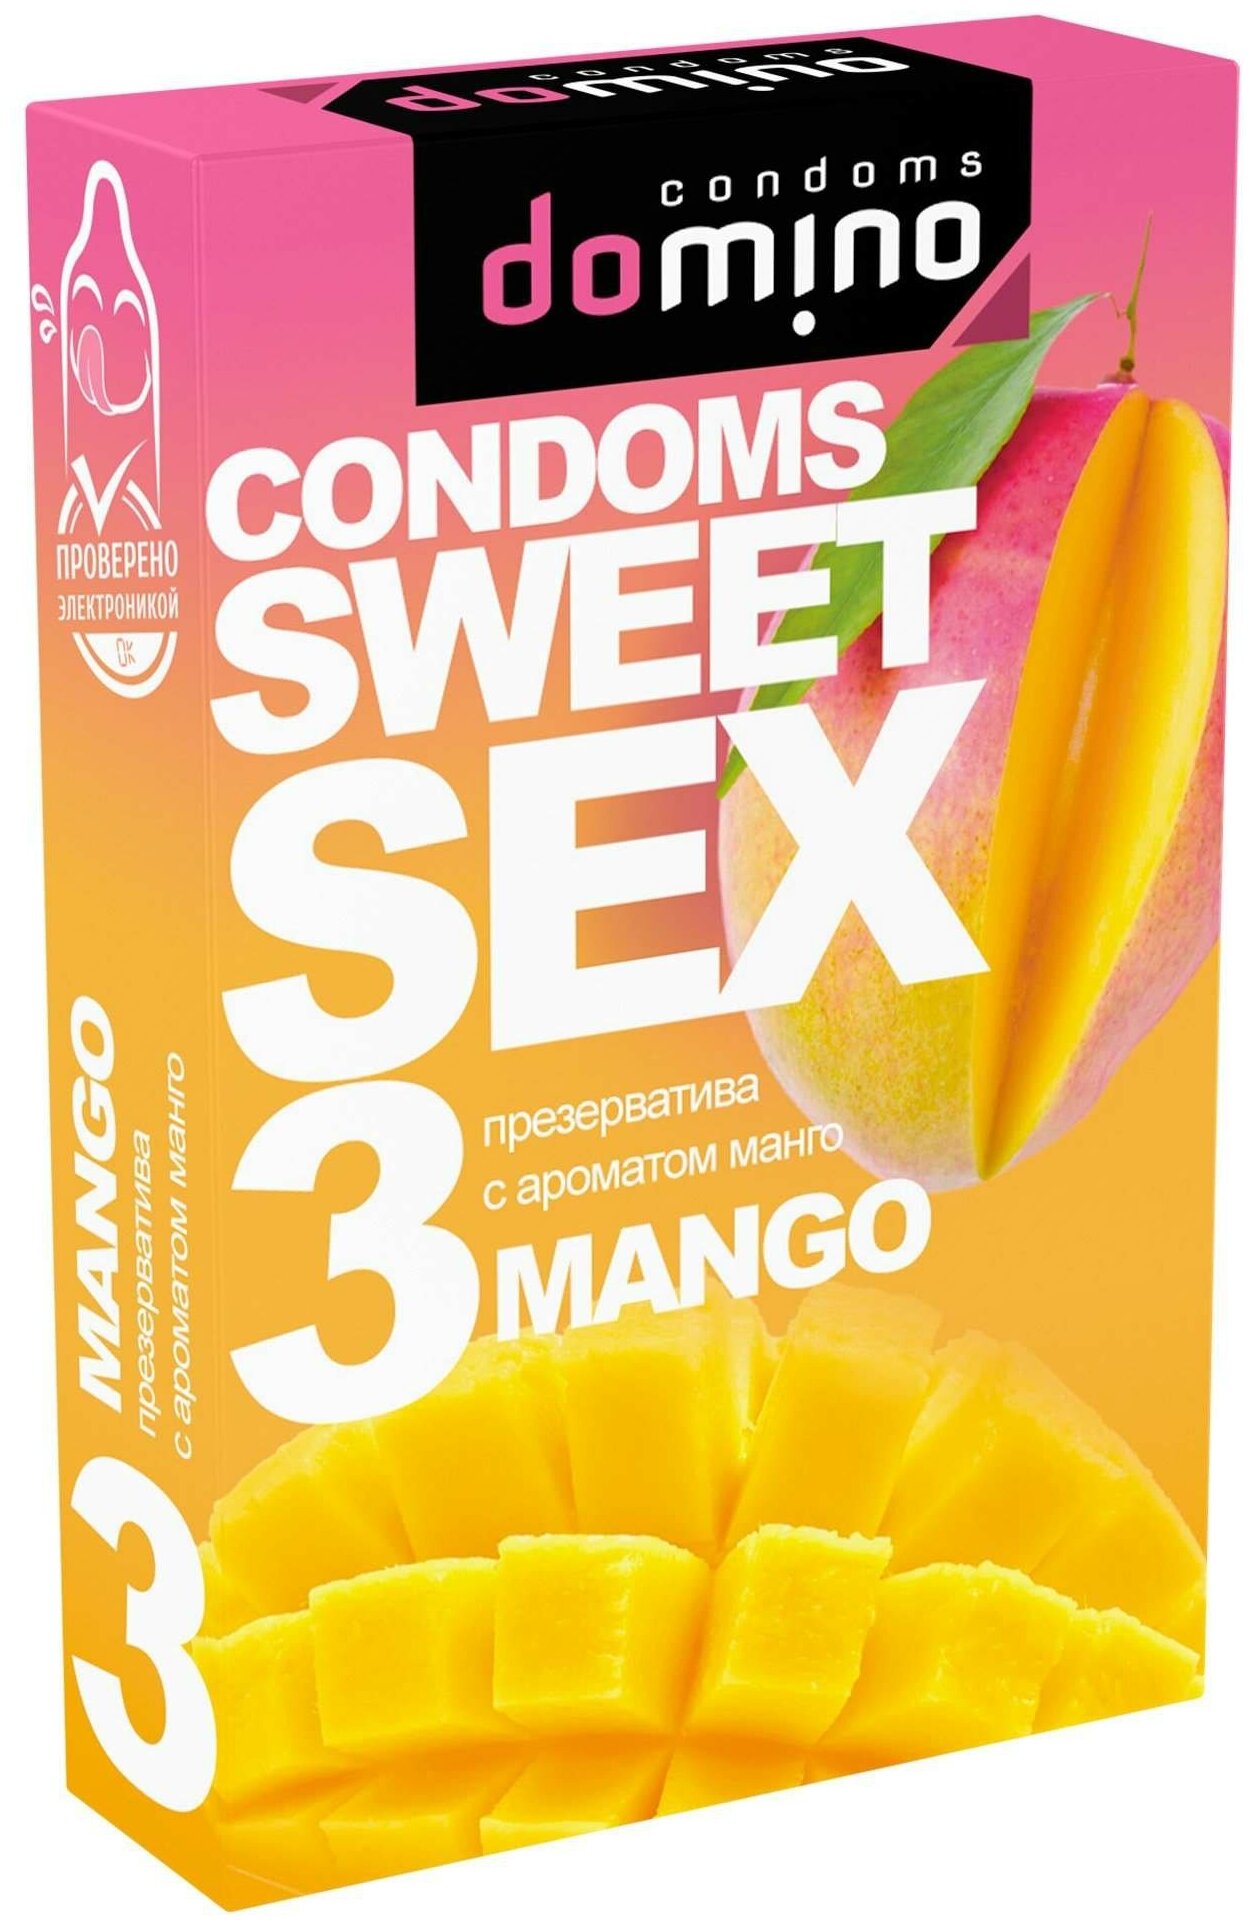 Презервативы гладкие ароматизированные DOMINO SWEET SEX Mango (с ароматом манго)